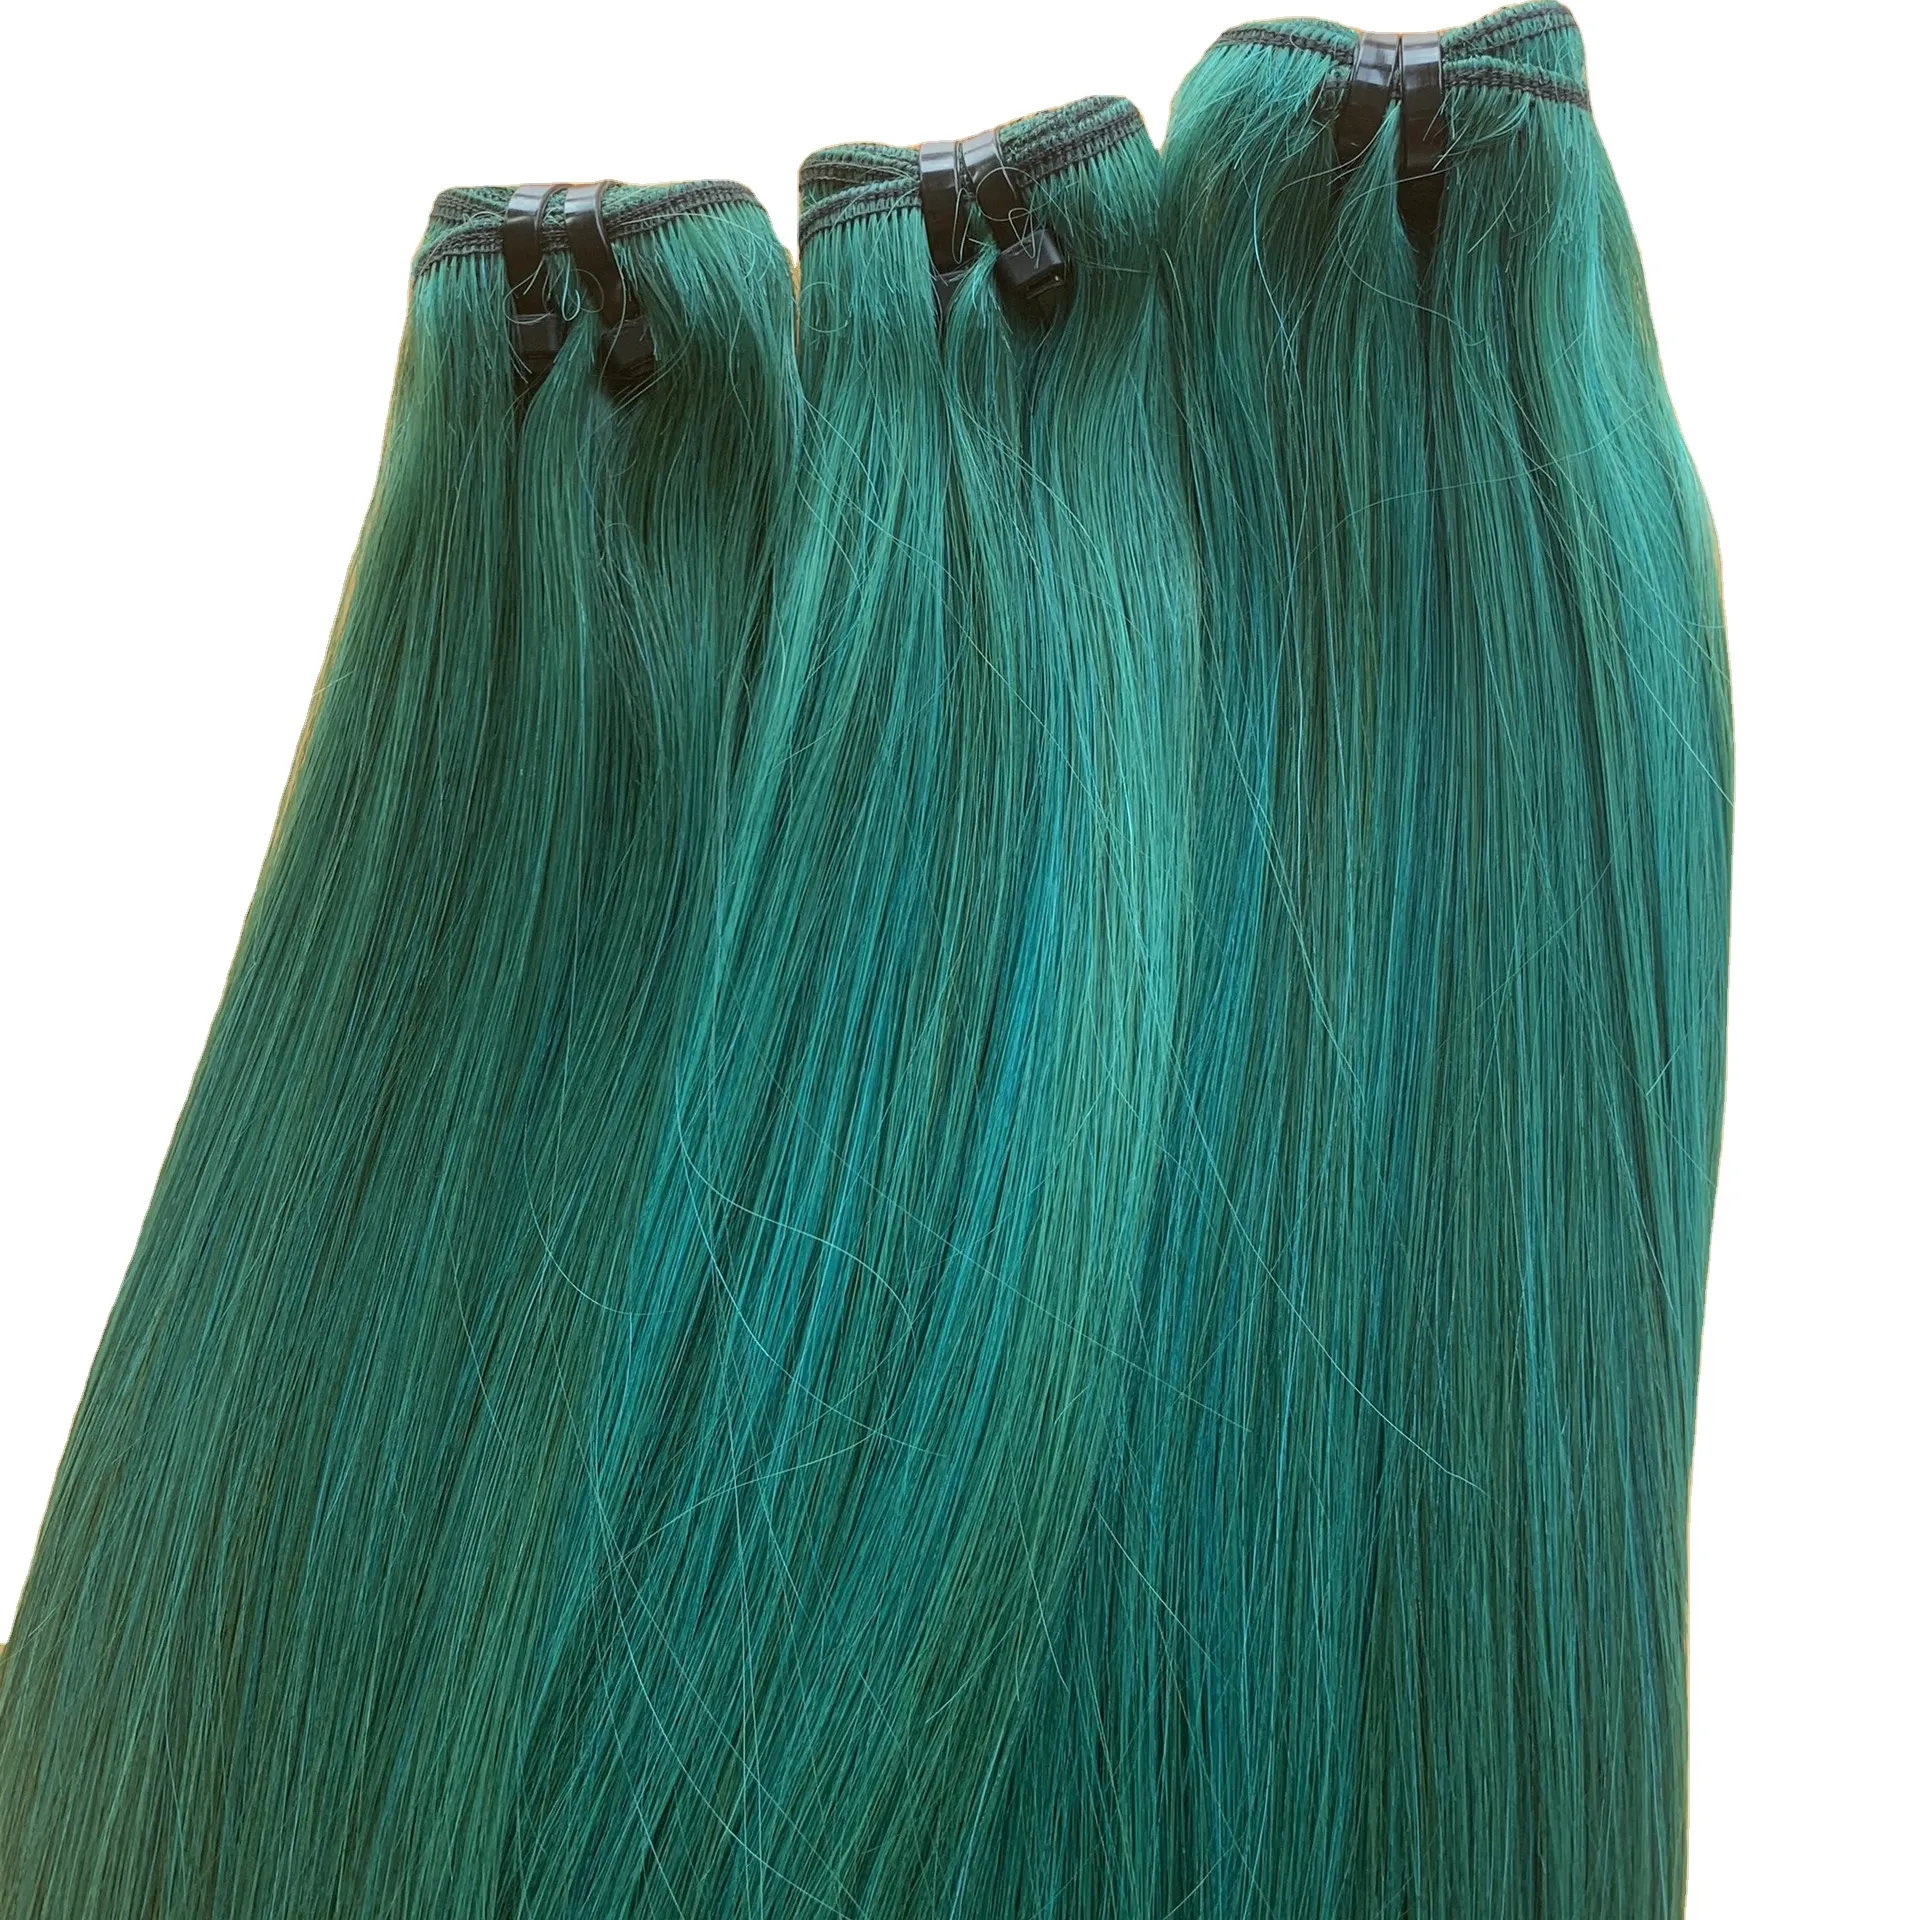 Prezzo all'ingrosso dei capelli vietnamiti grezzi al 100% dalla produzione di vari colori e Texture